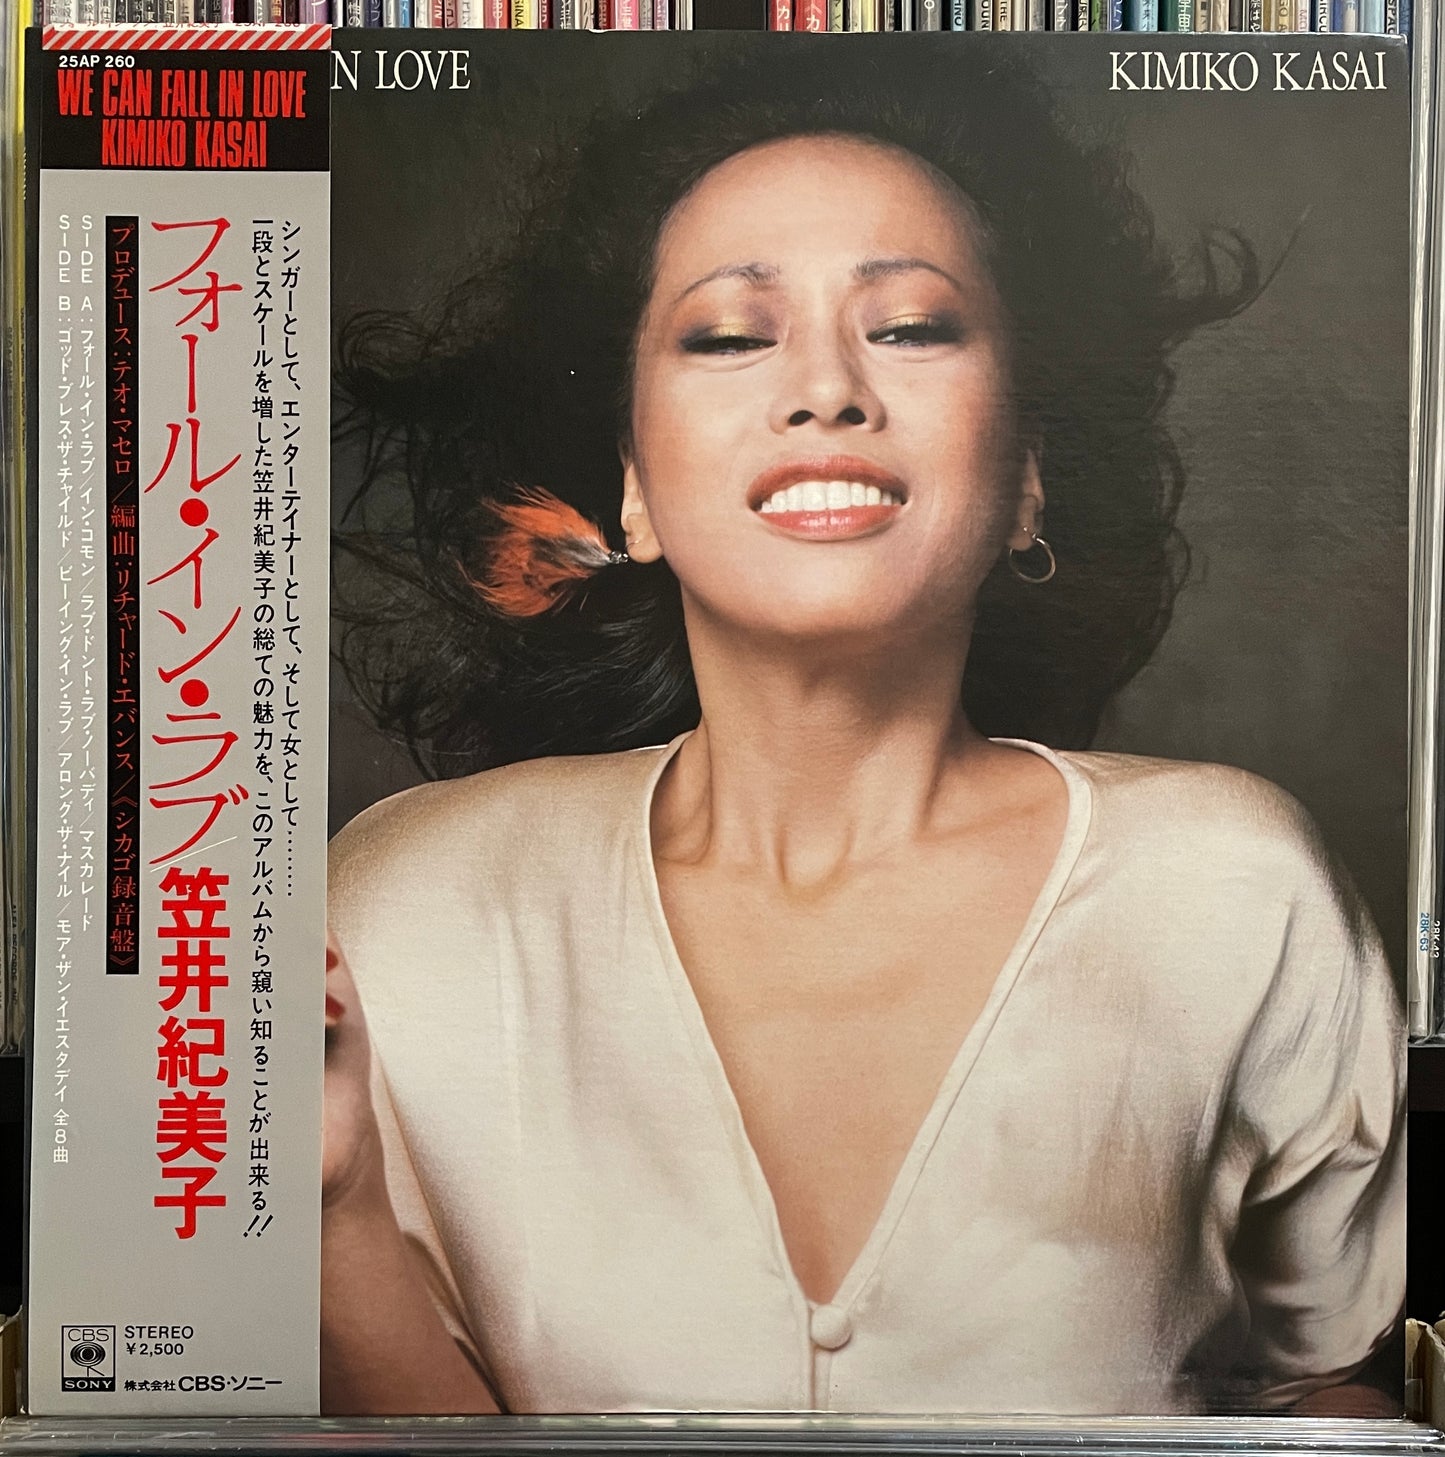 Kimiko Kasai “We Can Fall In Love” (1976)